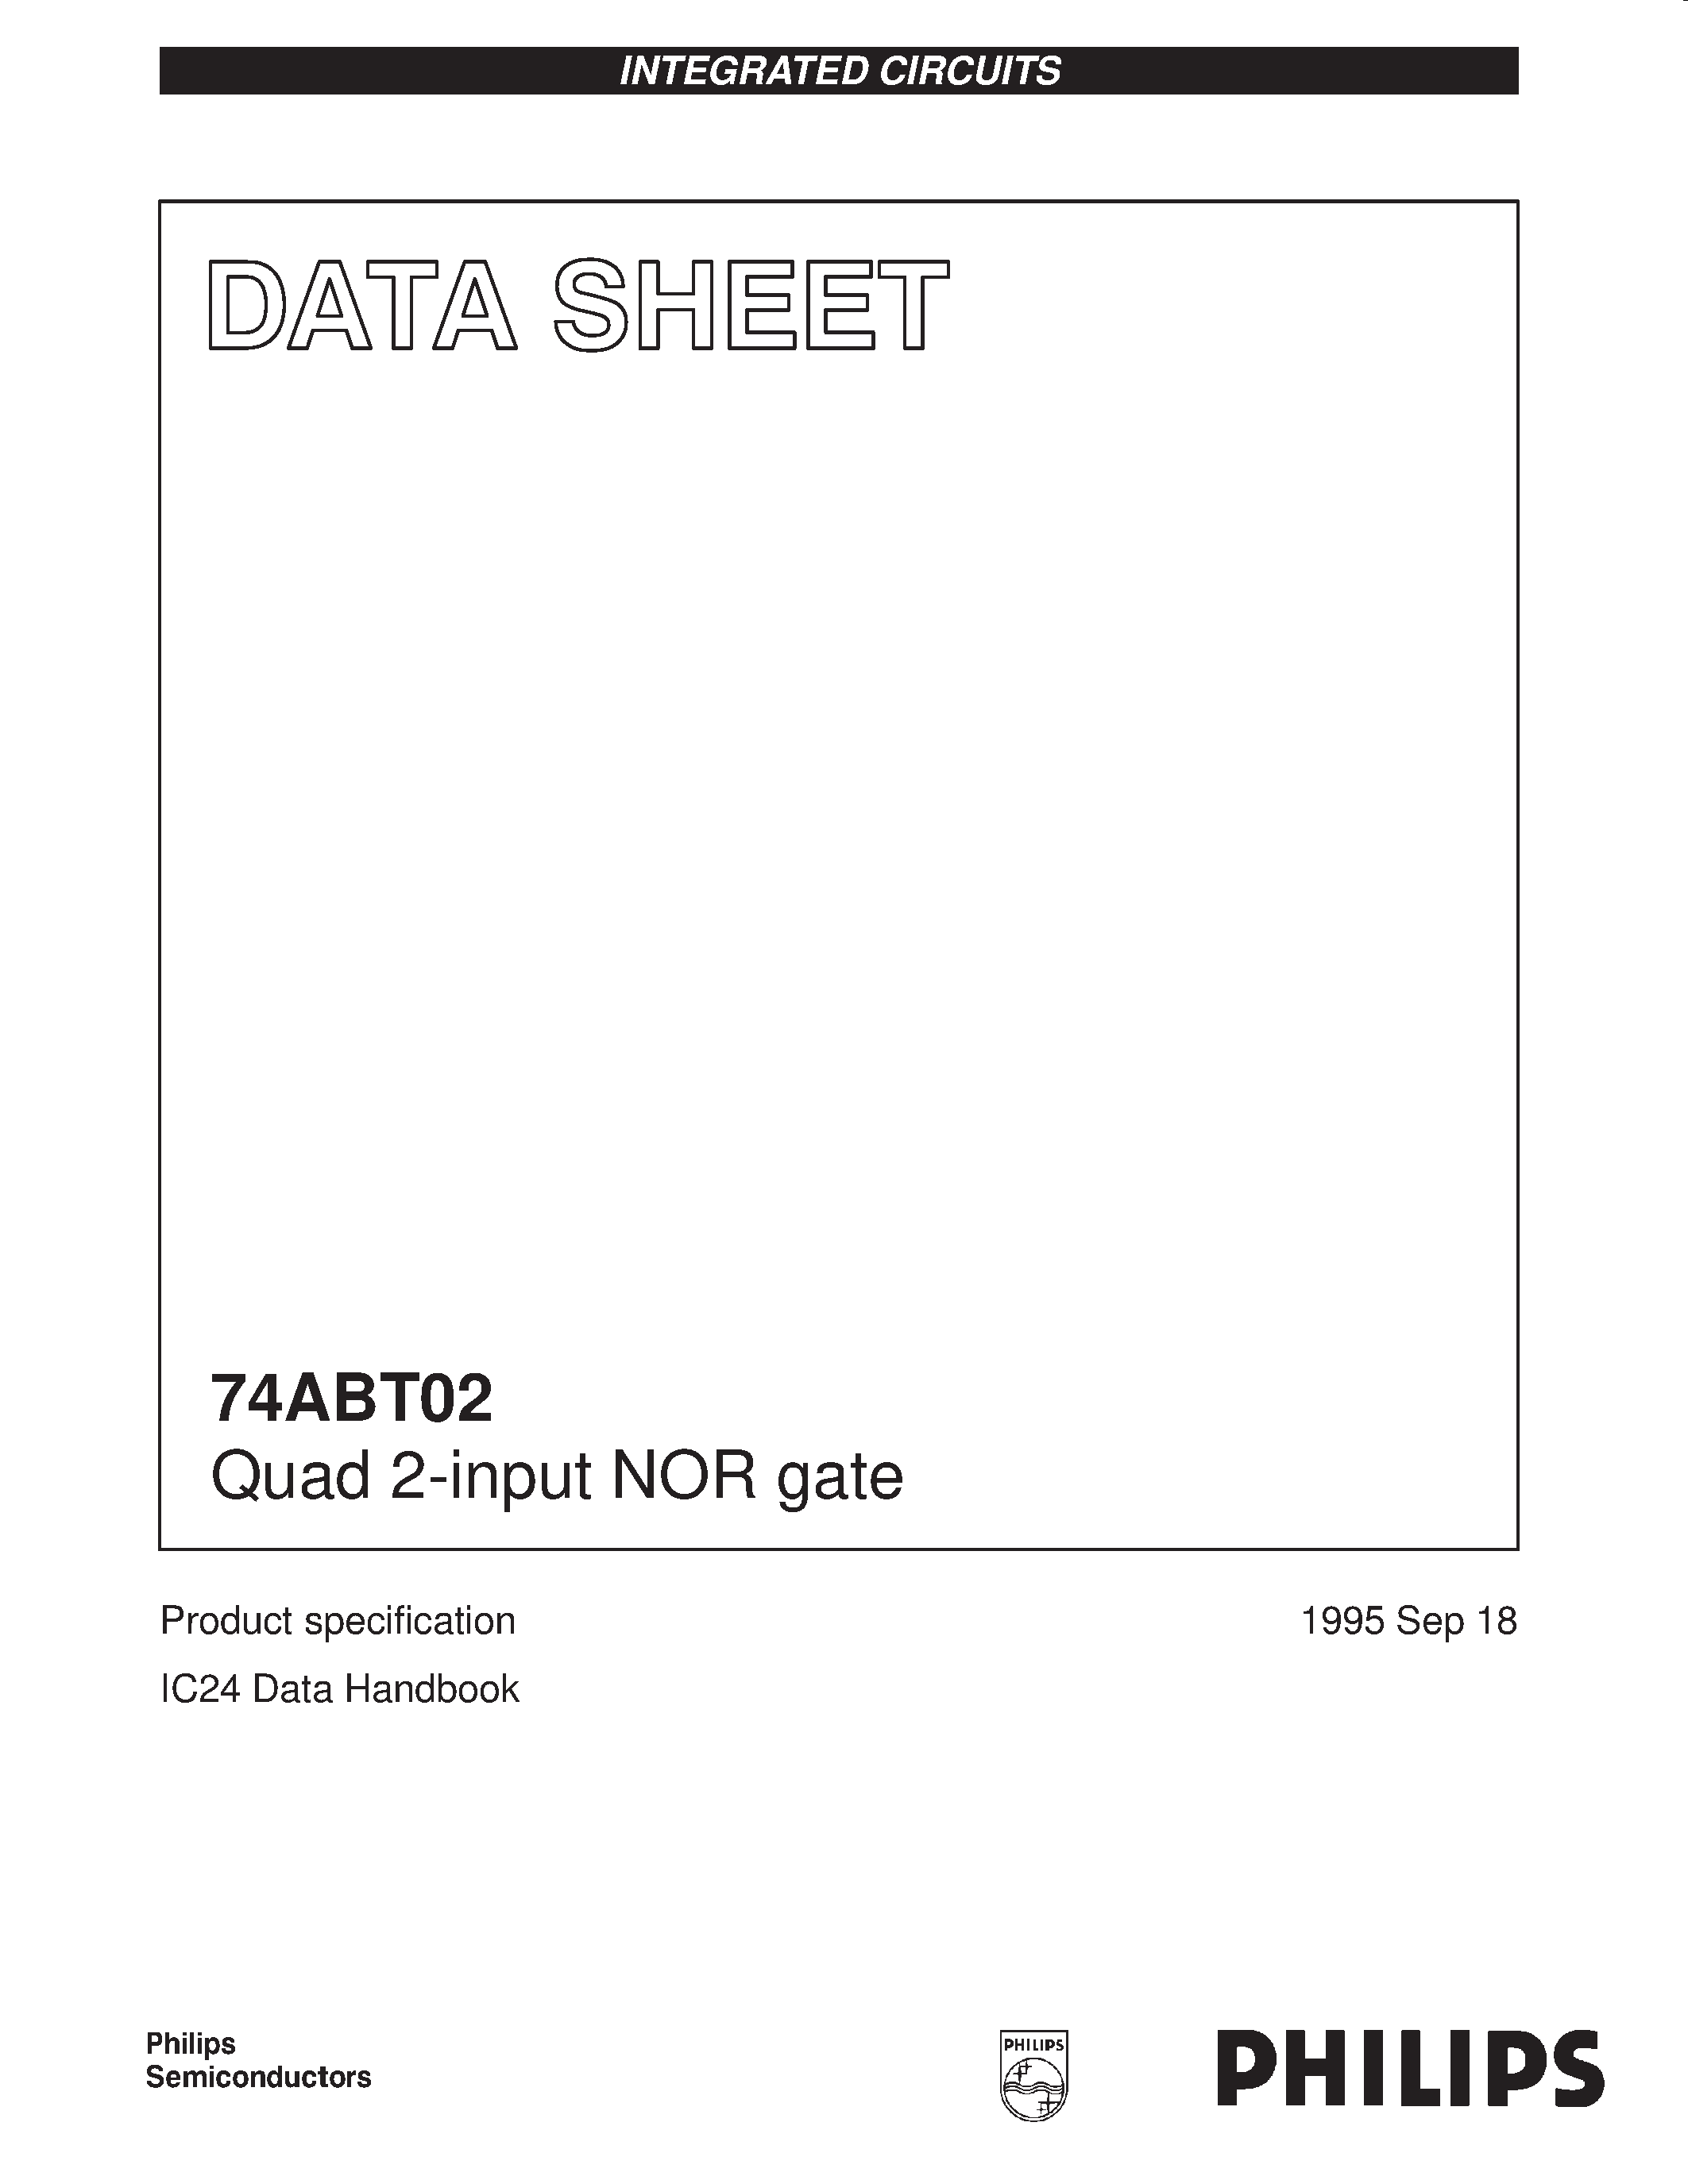 Даташит 74ABT02 - Quad 2-input NOR gate страница 1